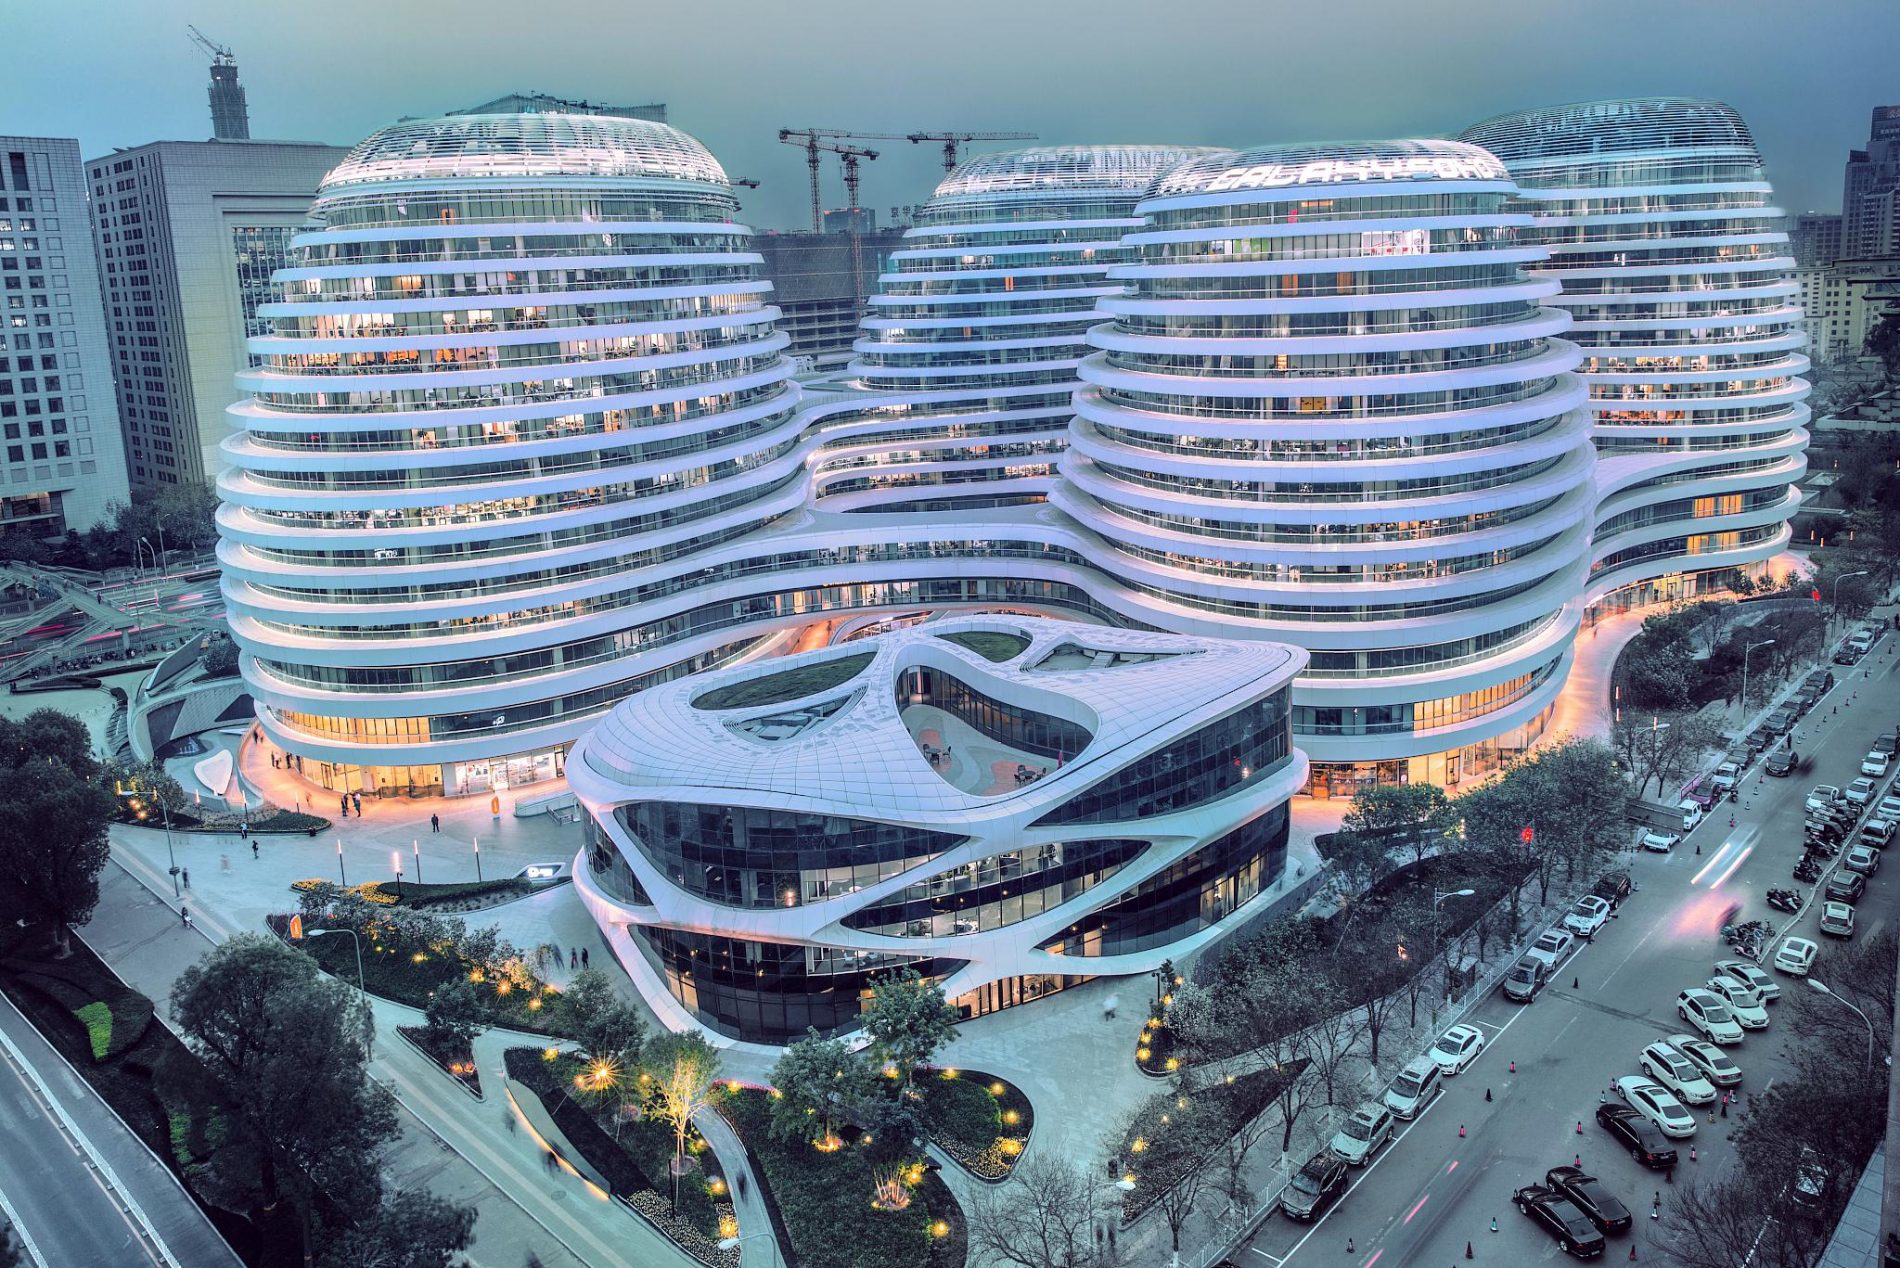  Galaxy SOHO Mall in Beijing, China, by Zaha Hadid